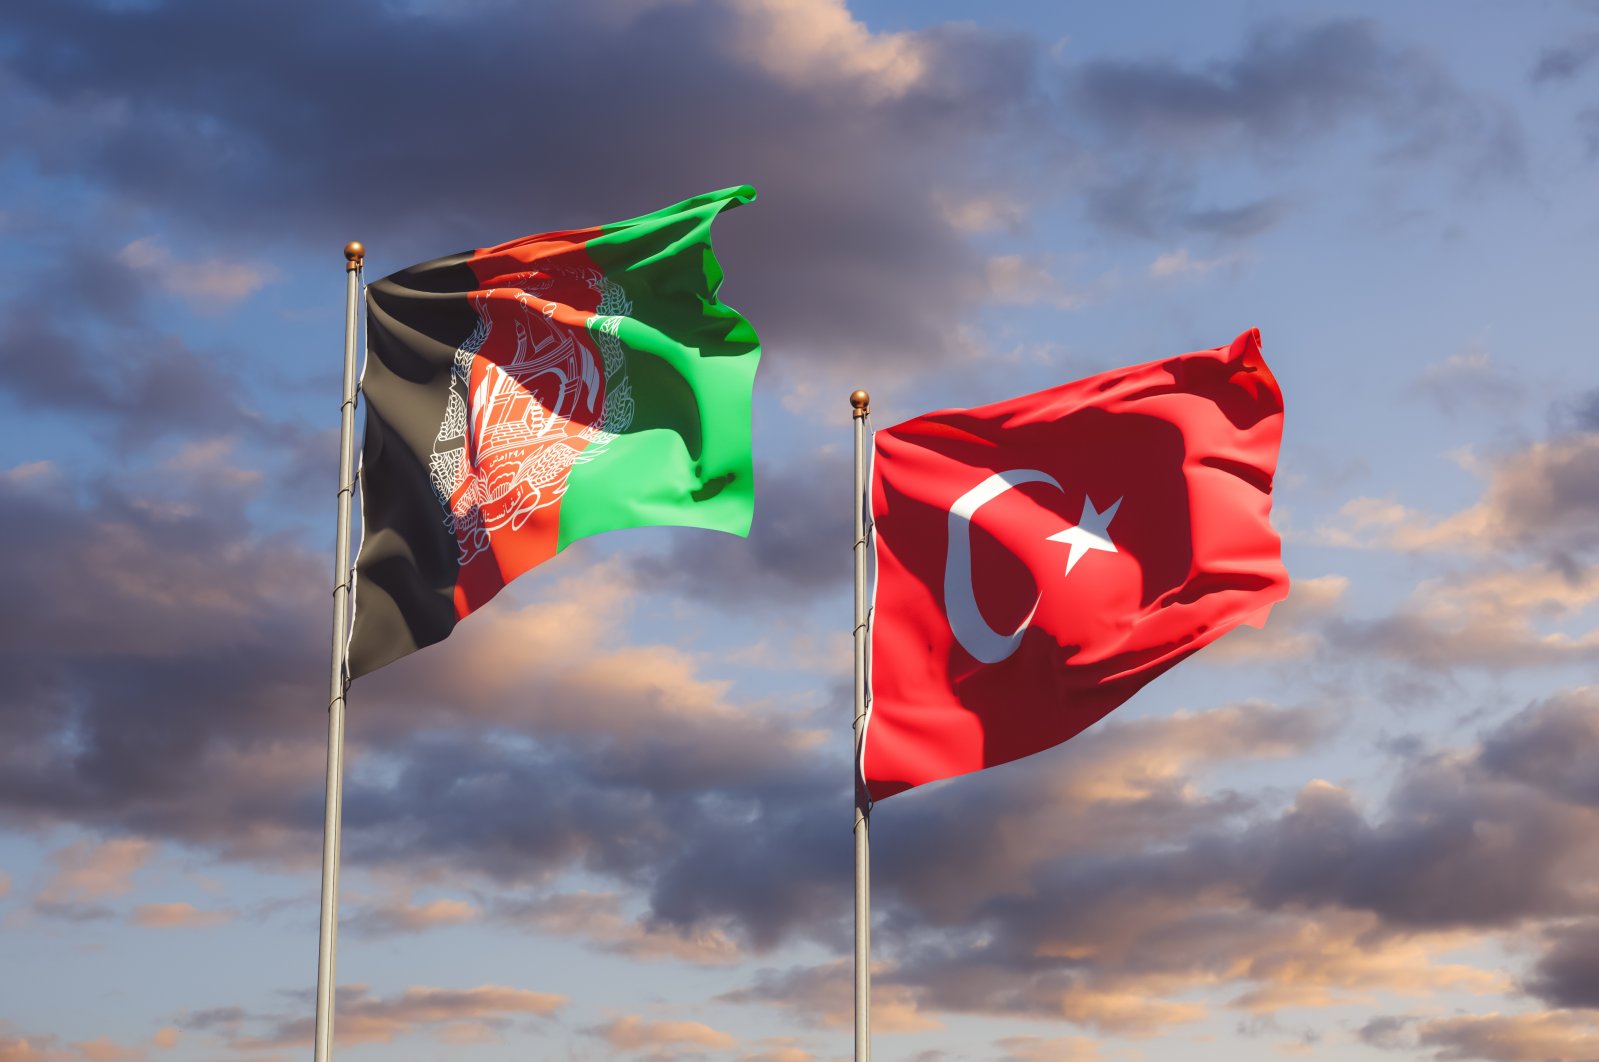 Türkiye’s role in Afghanistan | Column